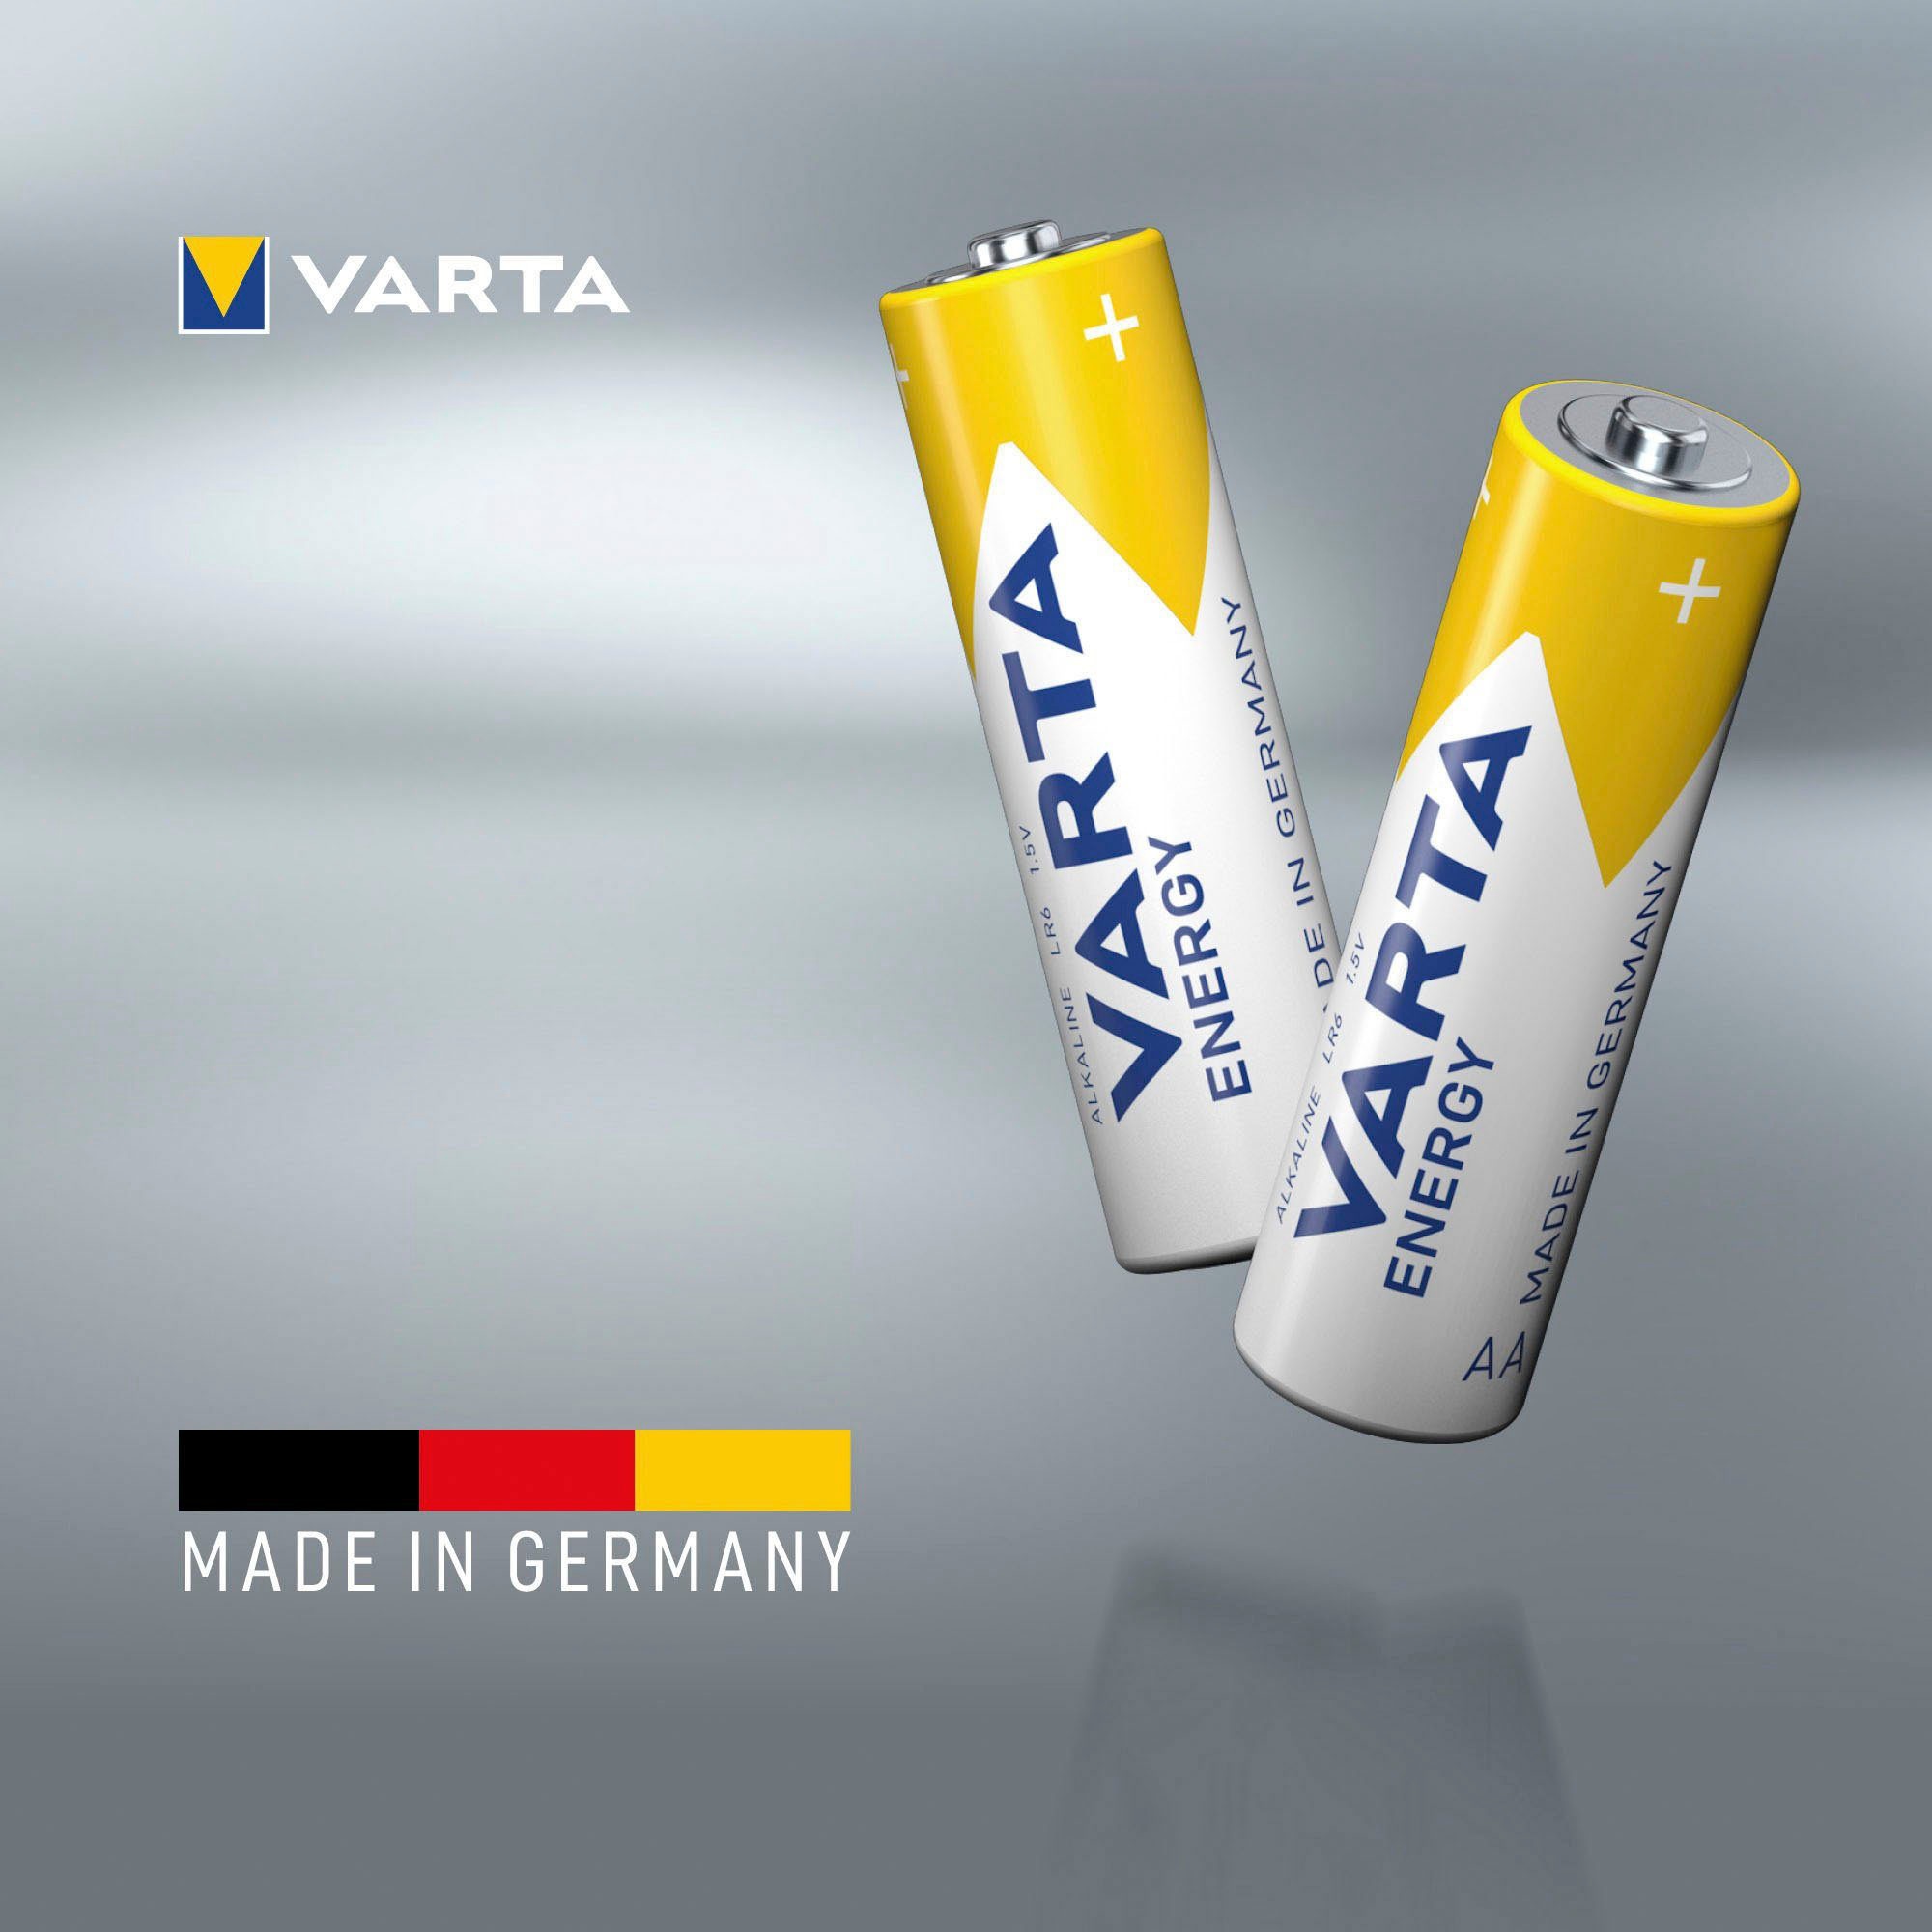 VARTA Batterie »30er Pack Energy AA Mignon LR6 Alkaline - Made in Germany«, LR06, (30 St.), bis zu 5 Jahren lagerfähig